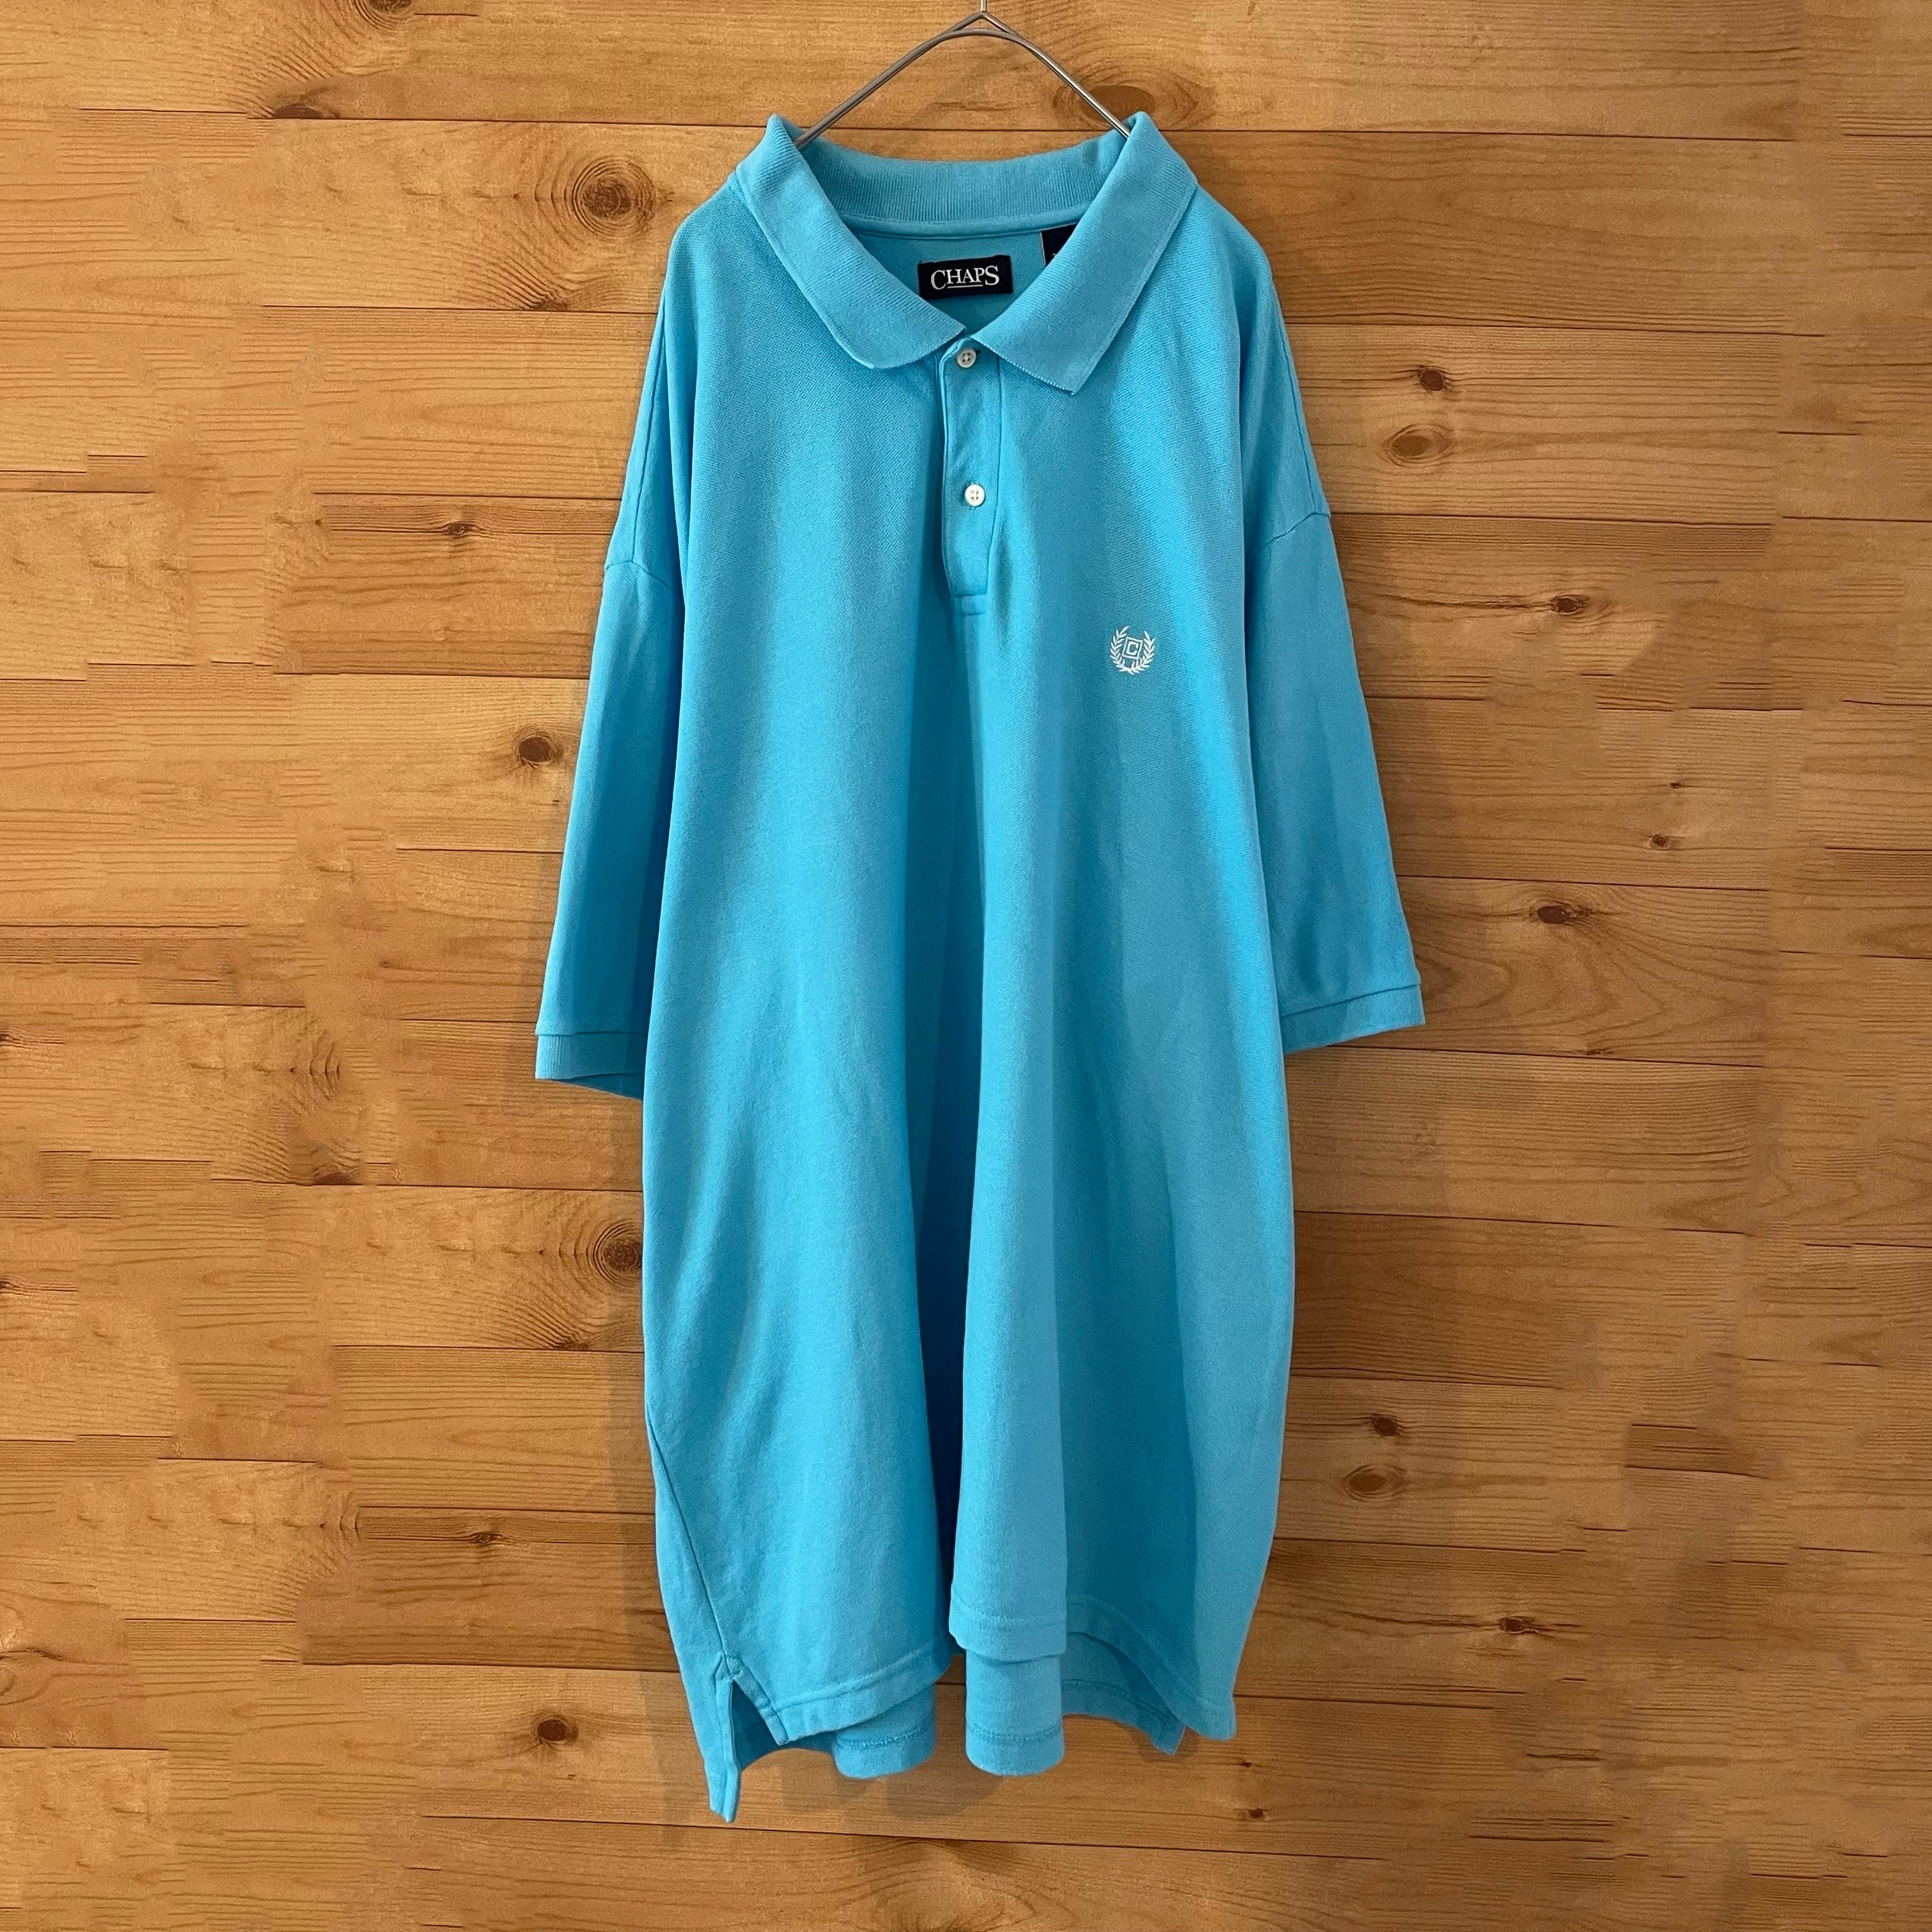 CHAPSビッグサイズ ポロシャツ 3XB 刺繍ロゴ ライトブルー